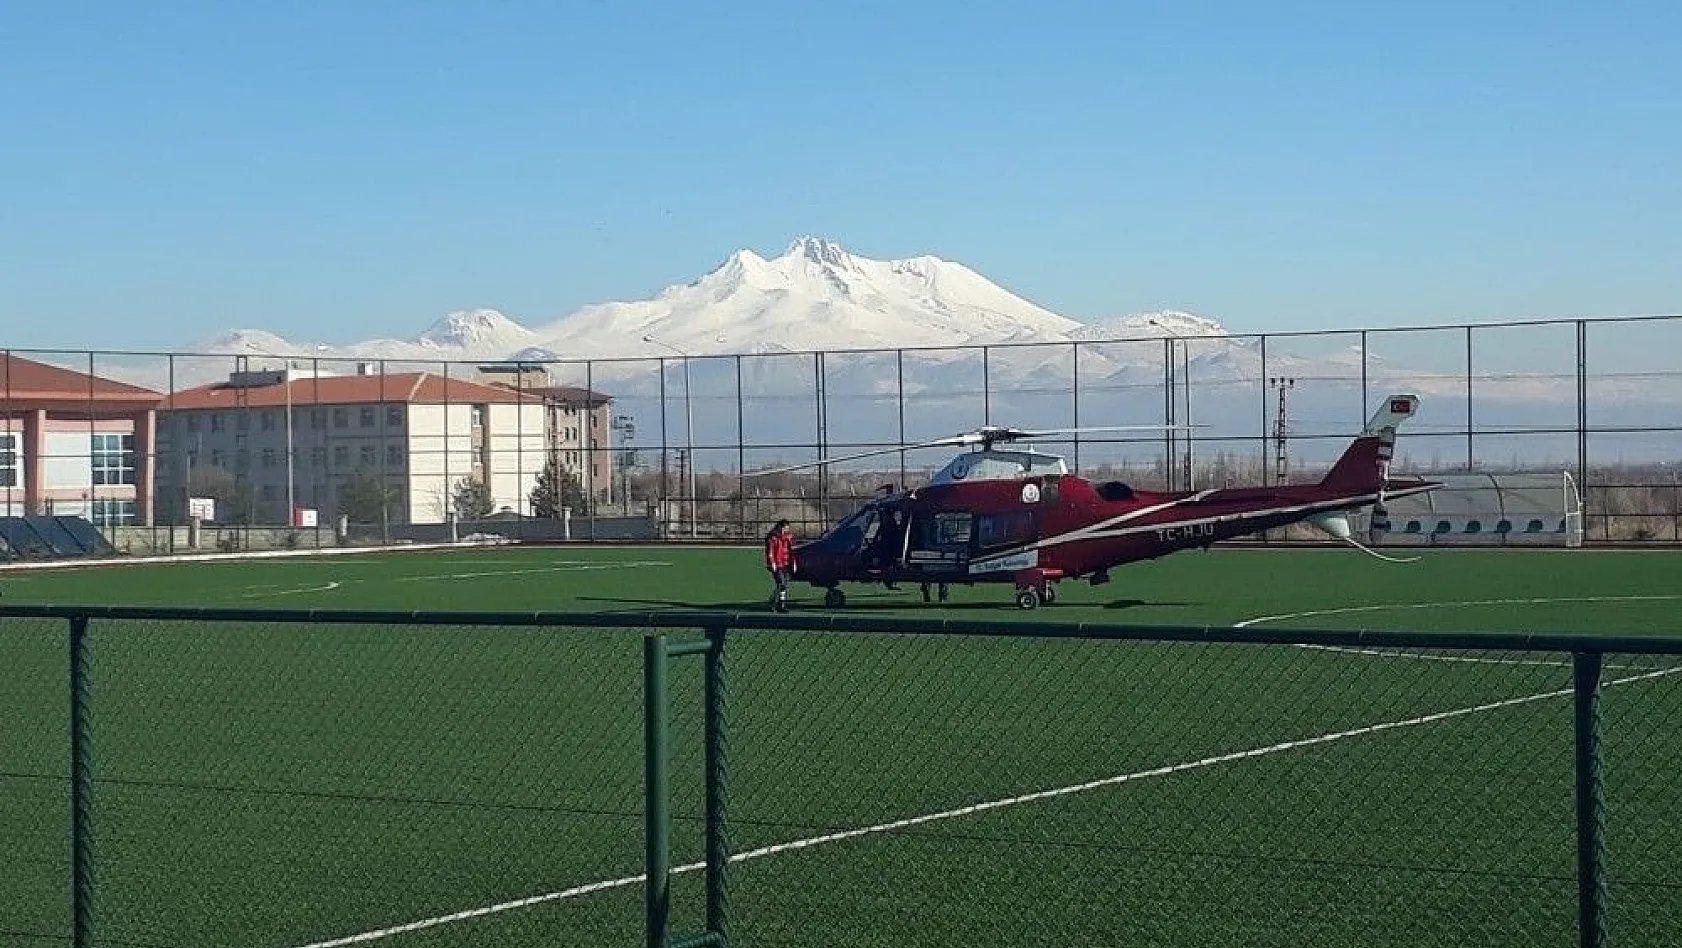 Helikopter ambulans açık kalp ameliyatı geçiren vatandaş için havalandı
